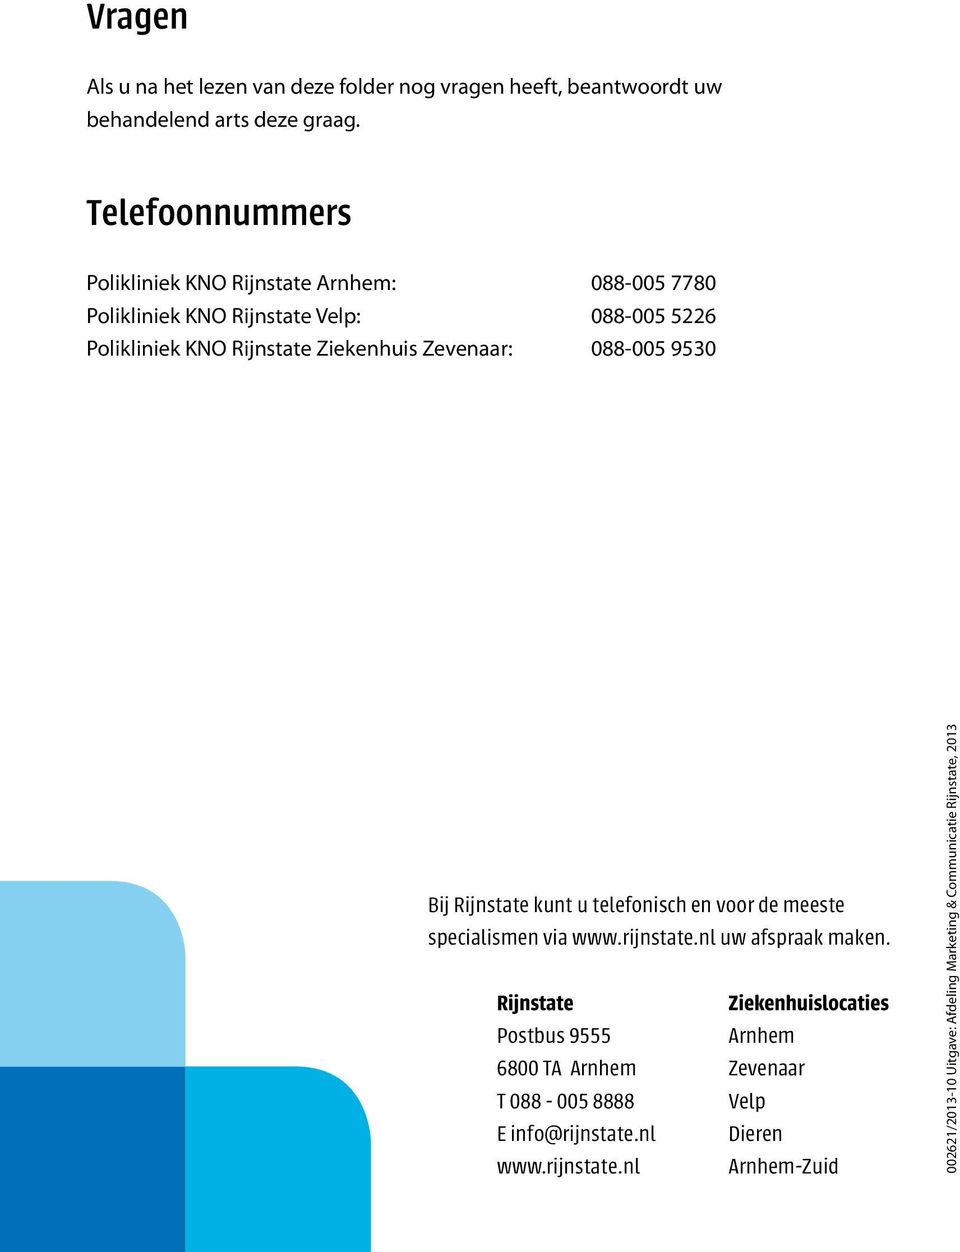 Zevenaar: 088-005 9530 Bij Rijnstate kunt u telefonisch en voor de meeste specialismen via www.rijnstate.nl uw afspraak maken.